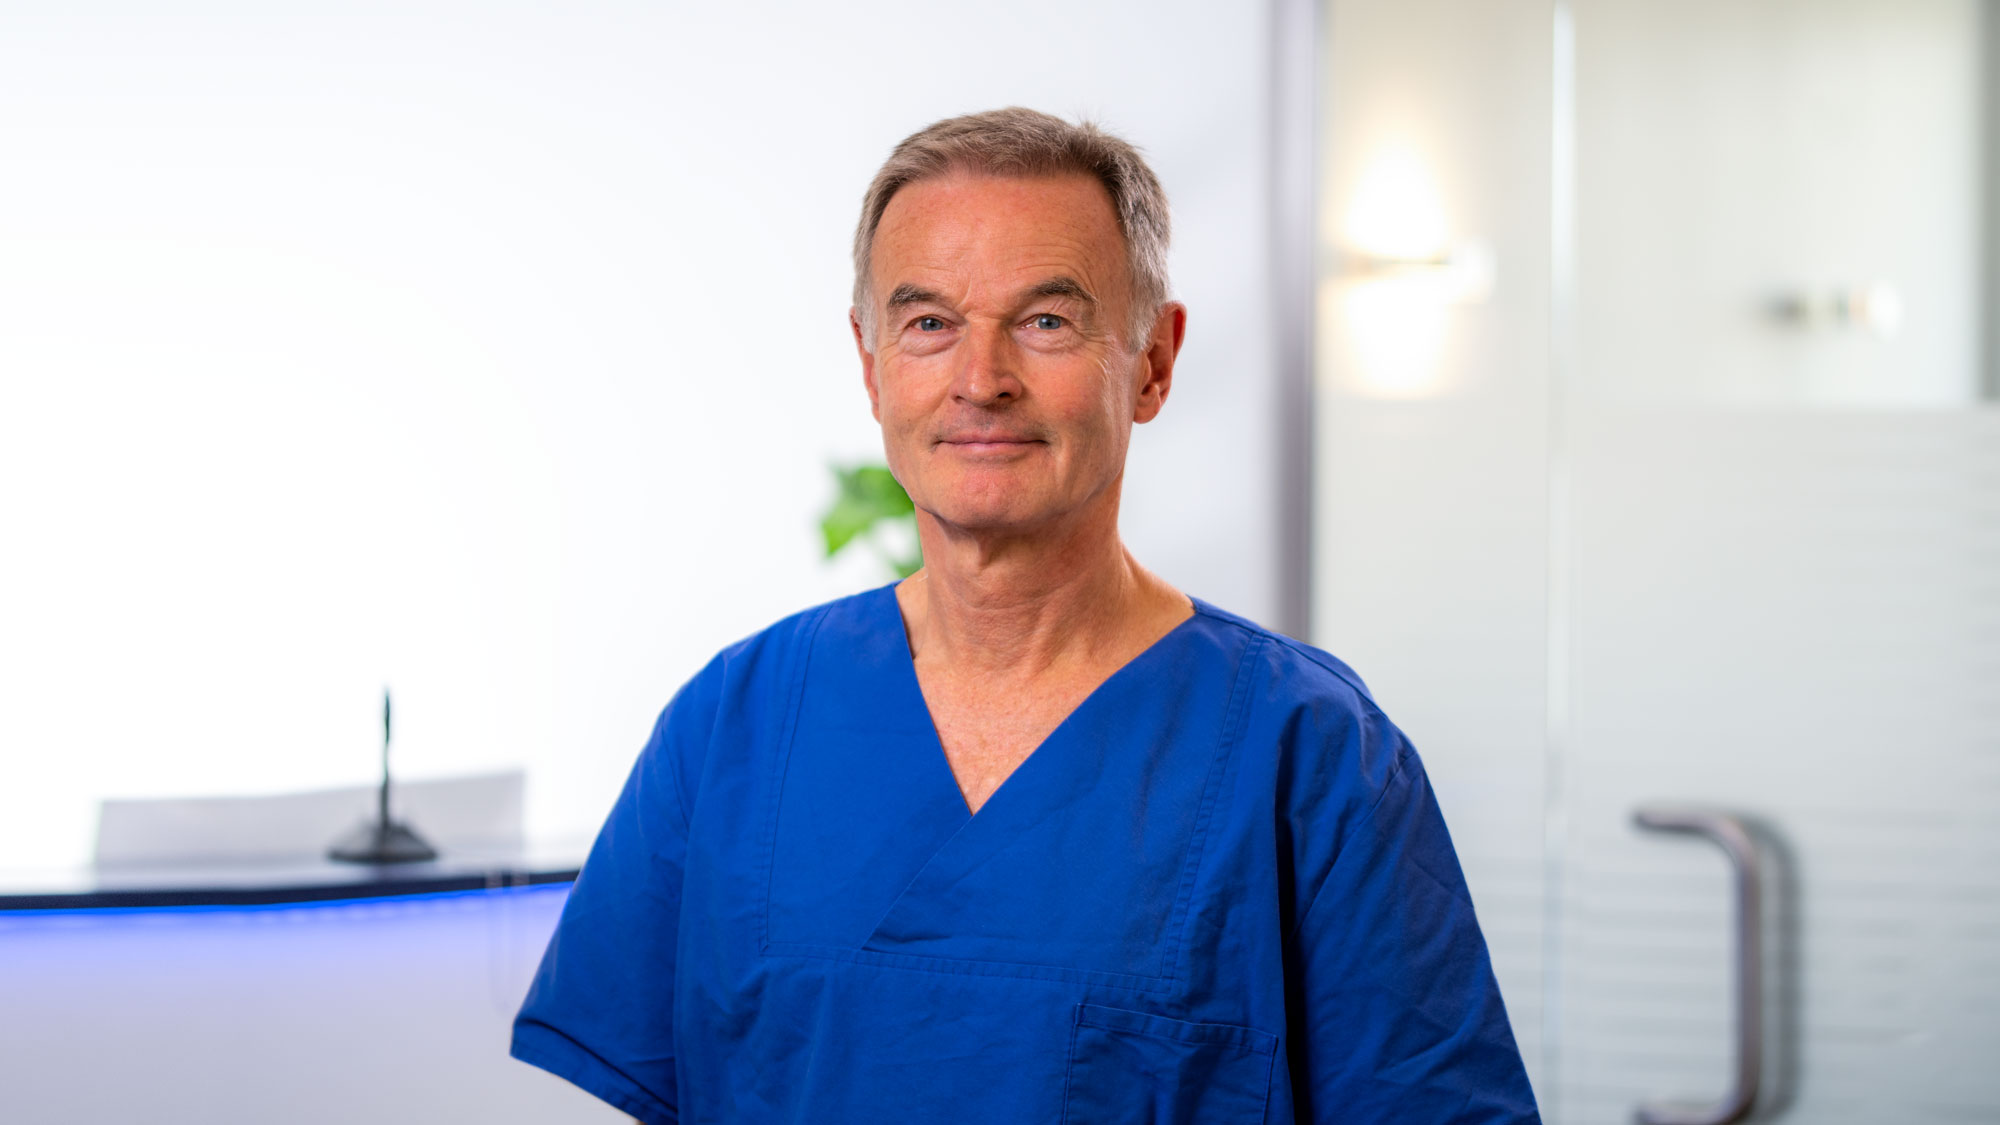 Facharzt Dr. Decker, Düsseldorf